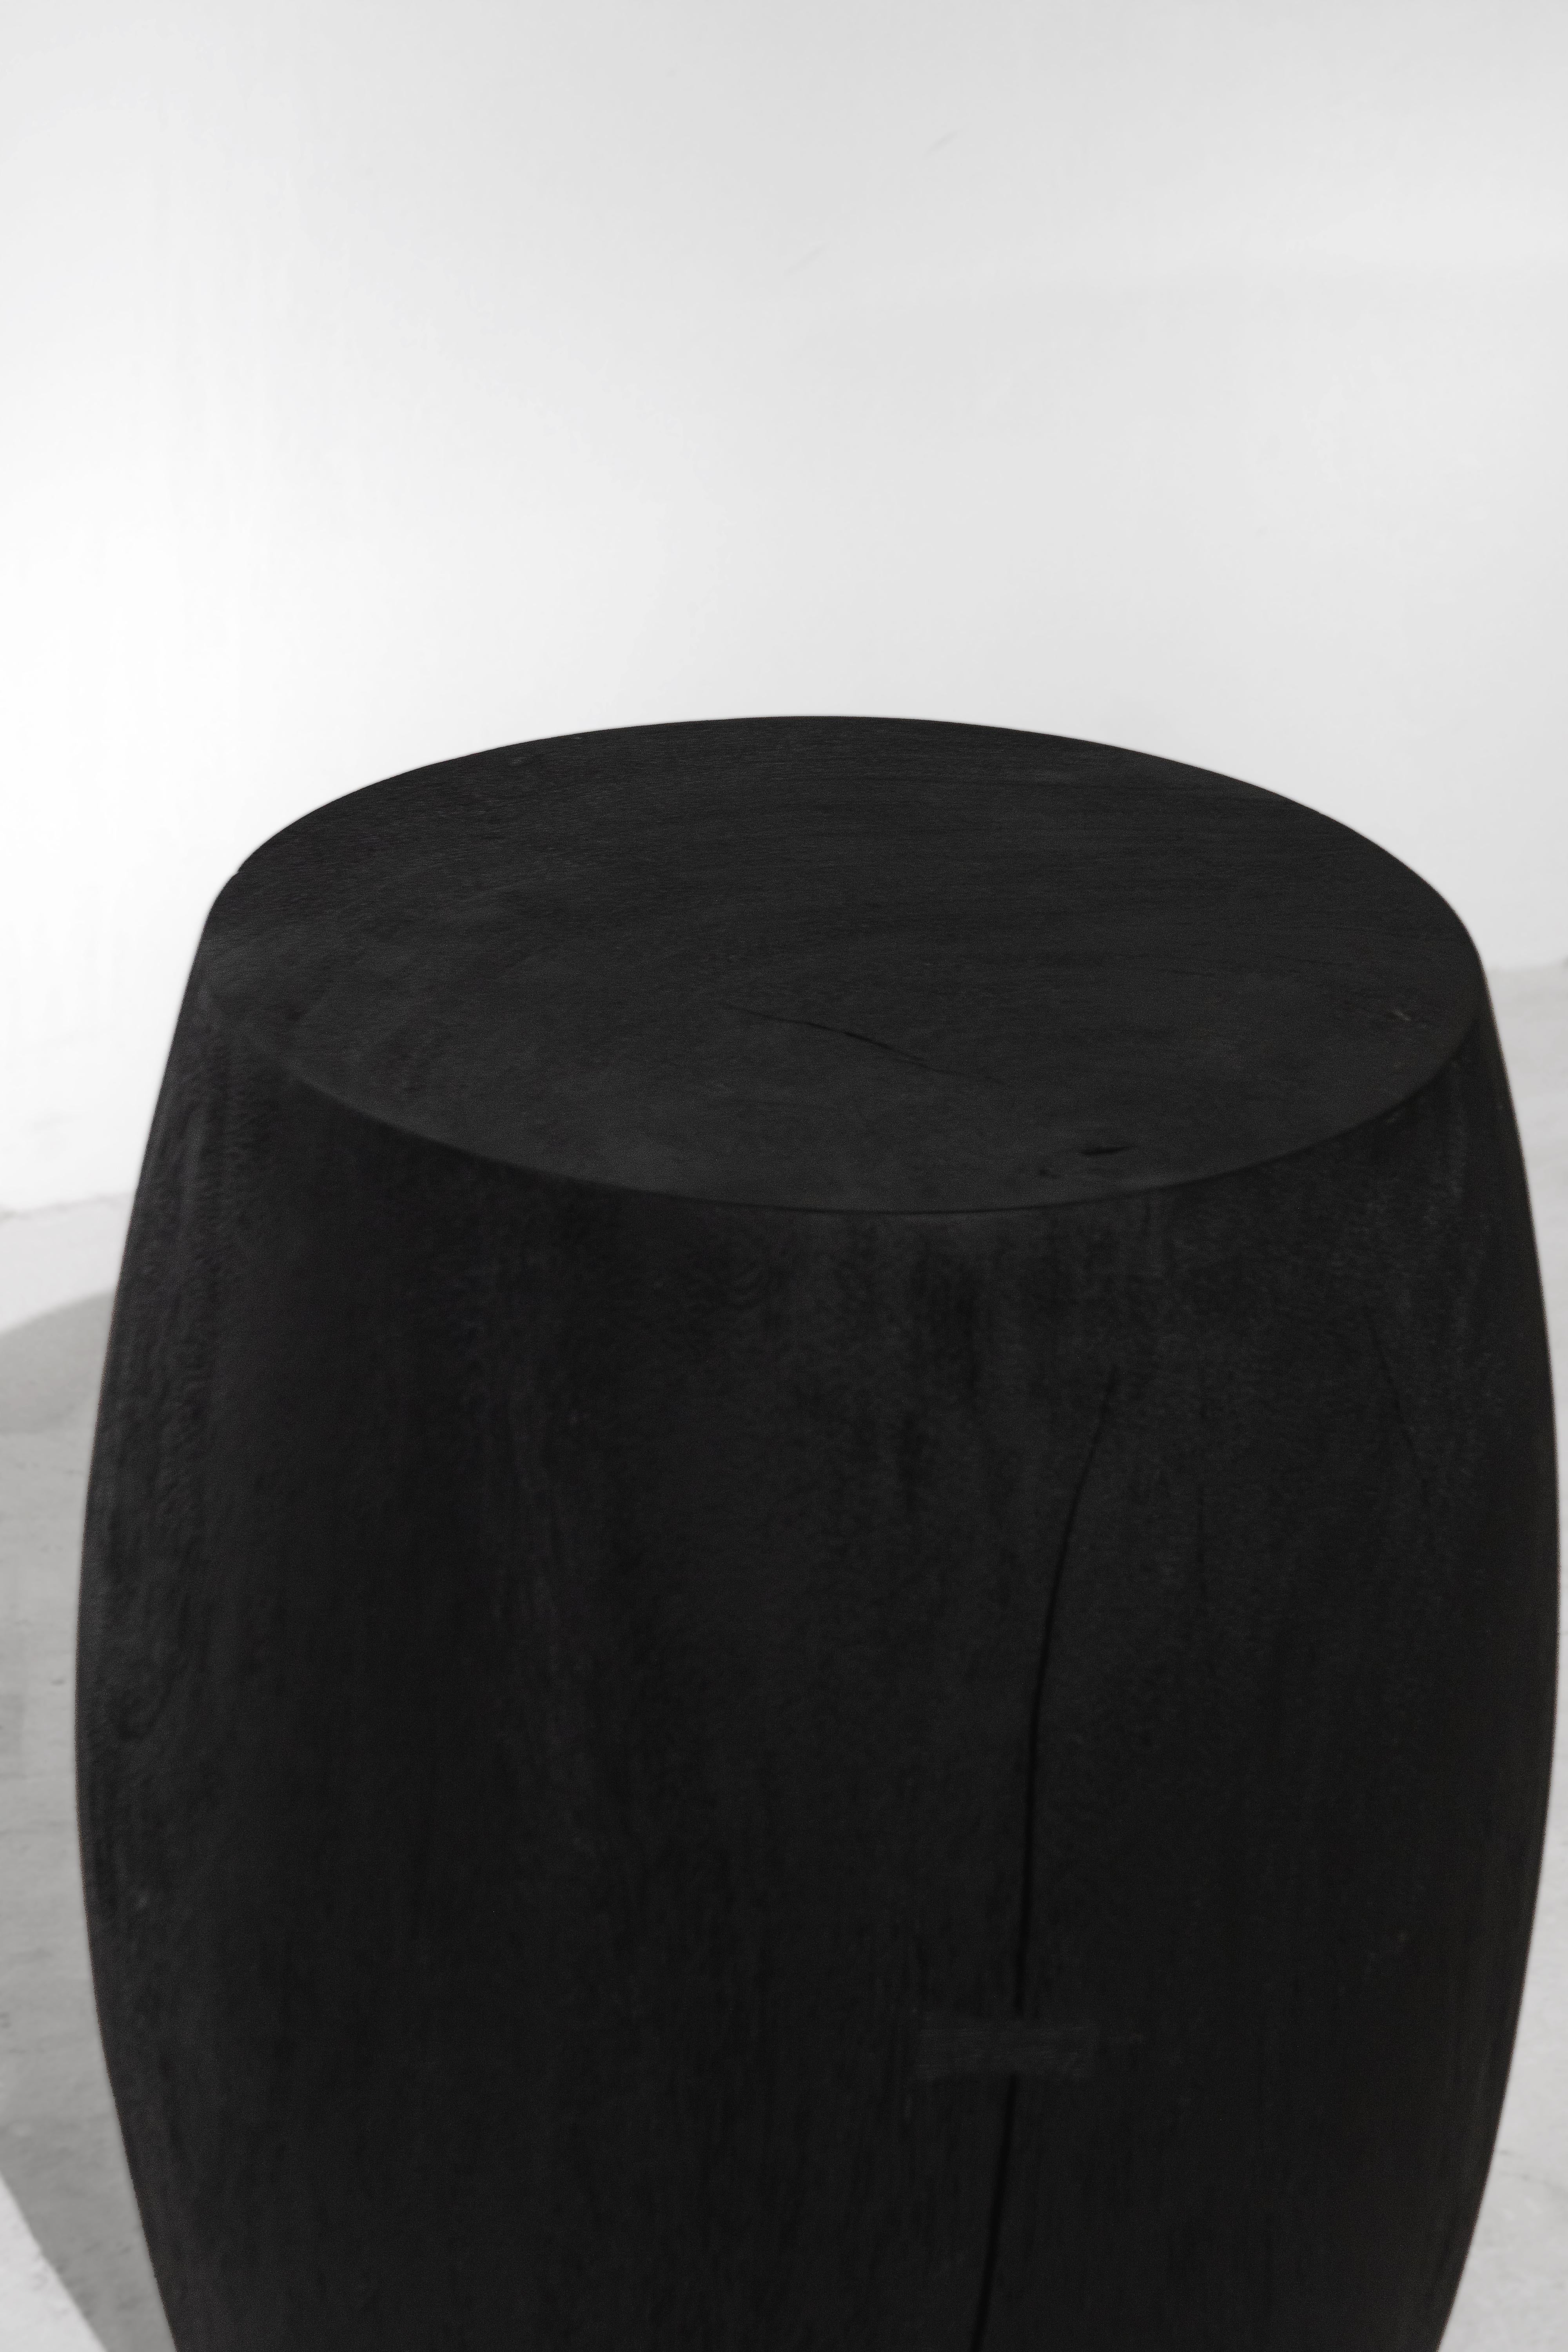 Thai GROM stool, Rough Black Monkey Pod finishing For Sale